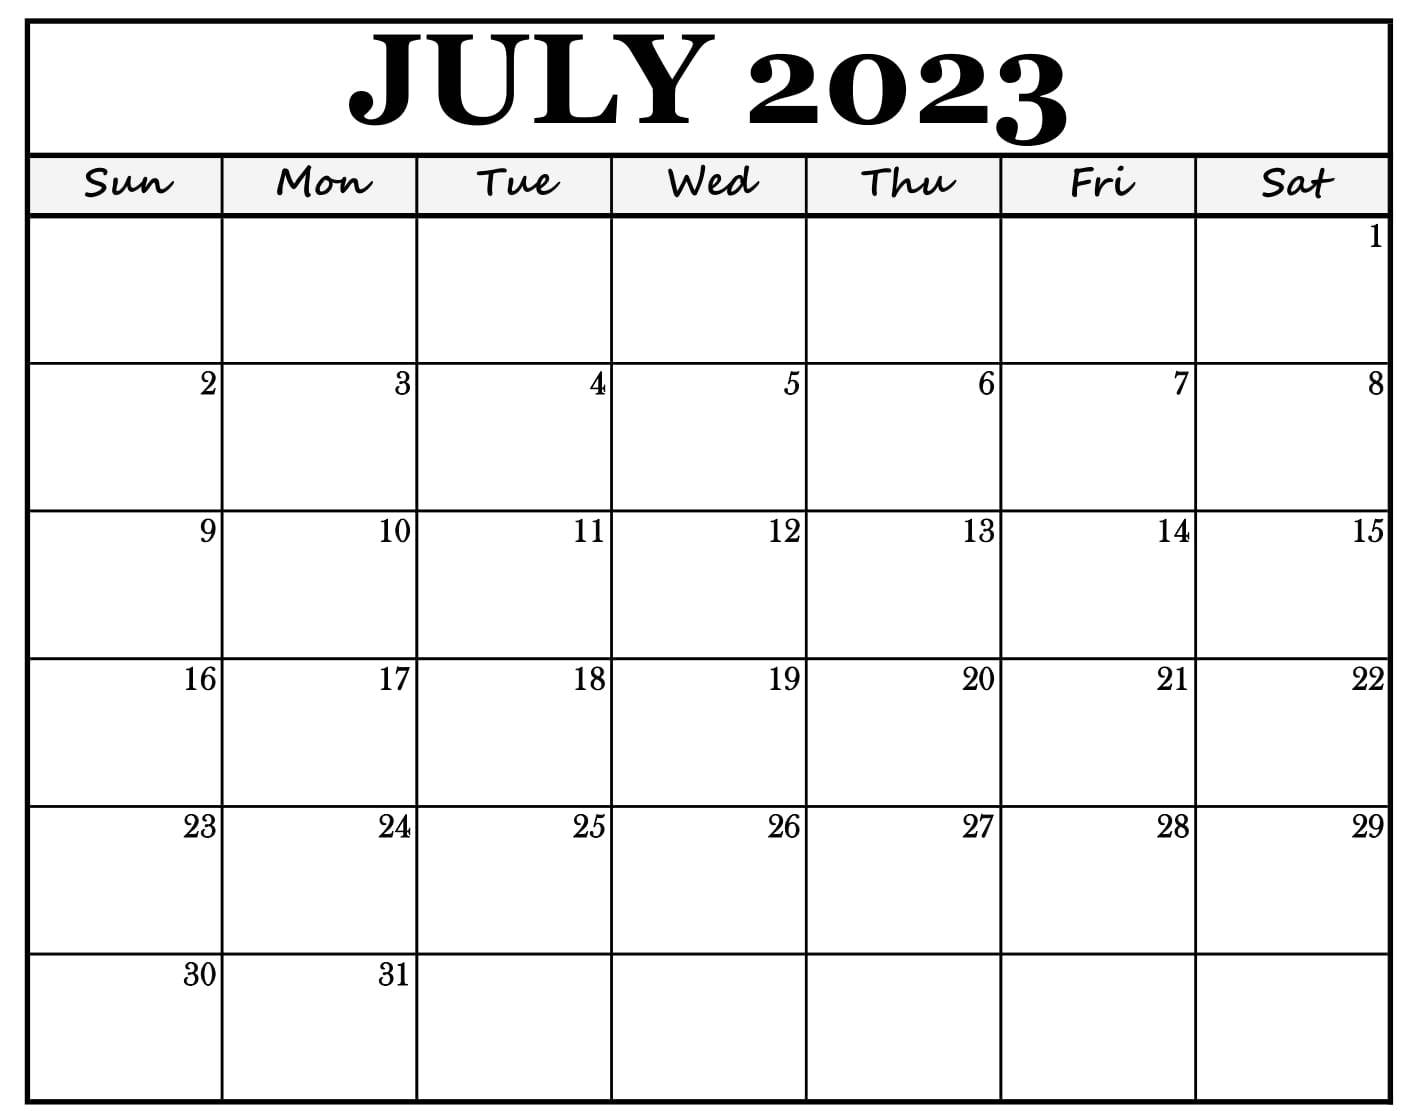 July 2023 Calendar in PDF